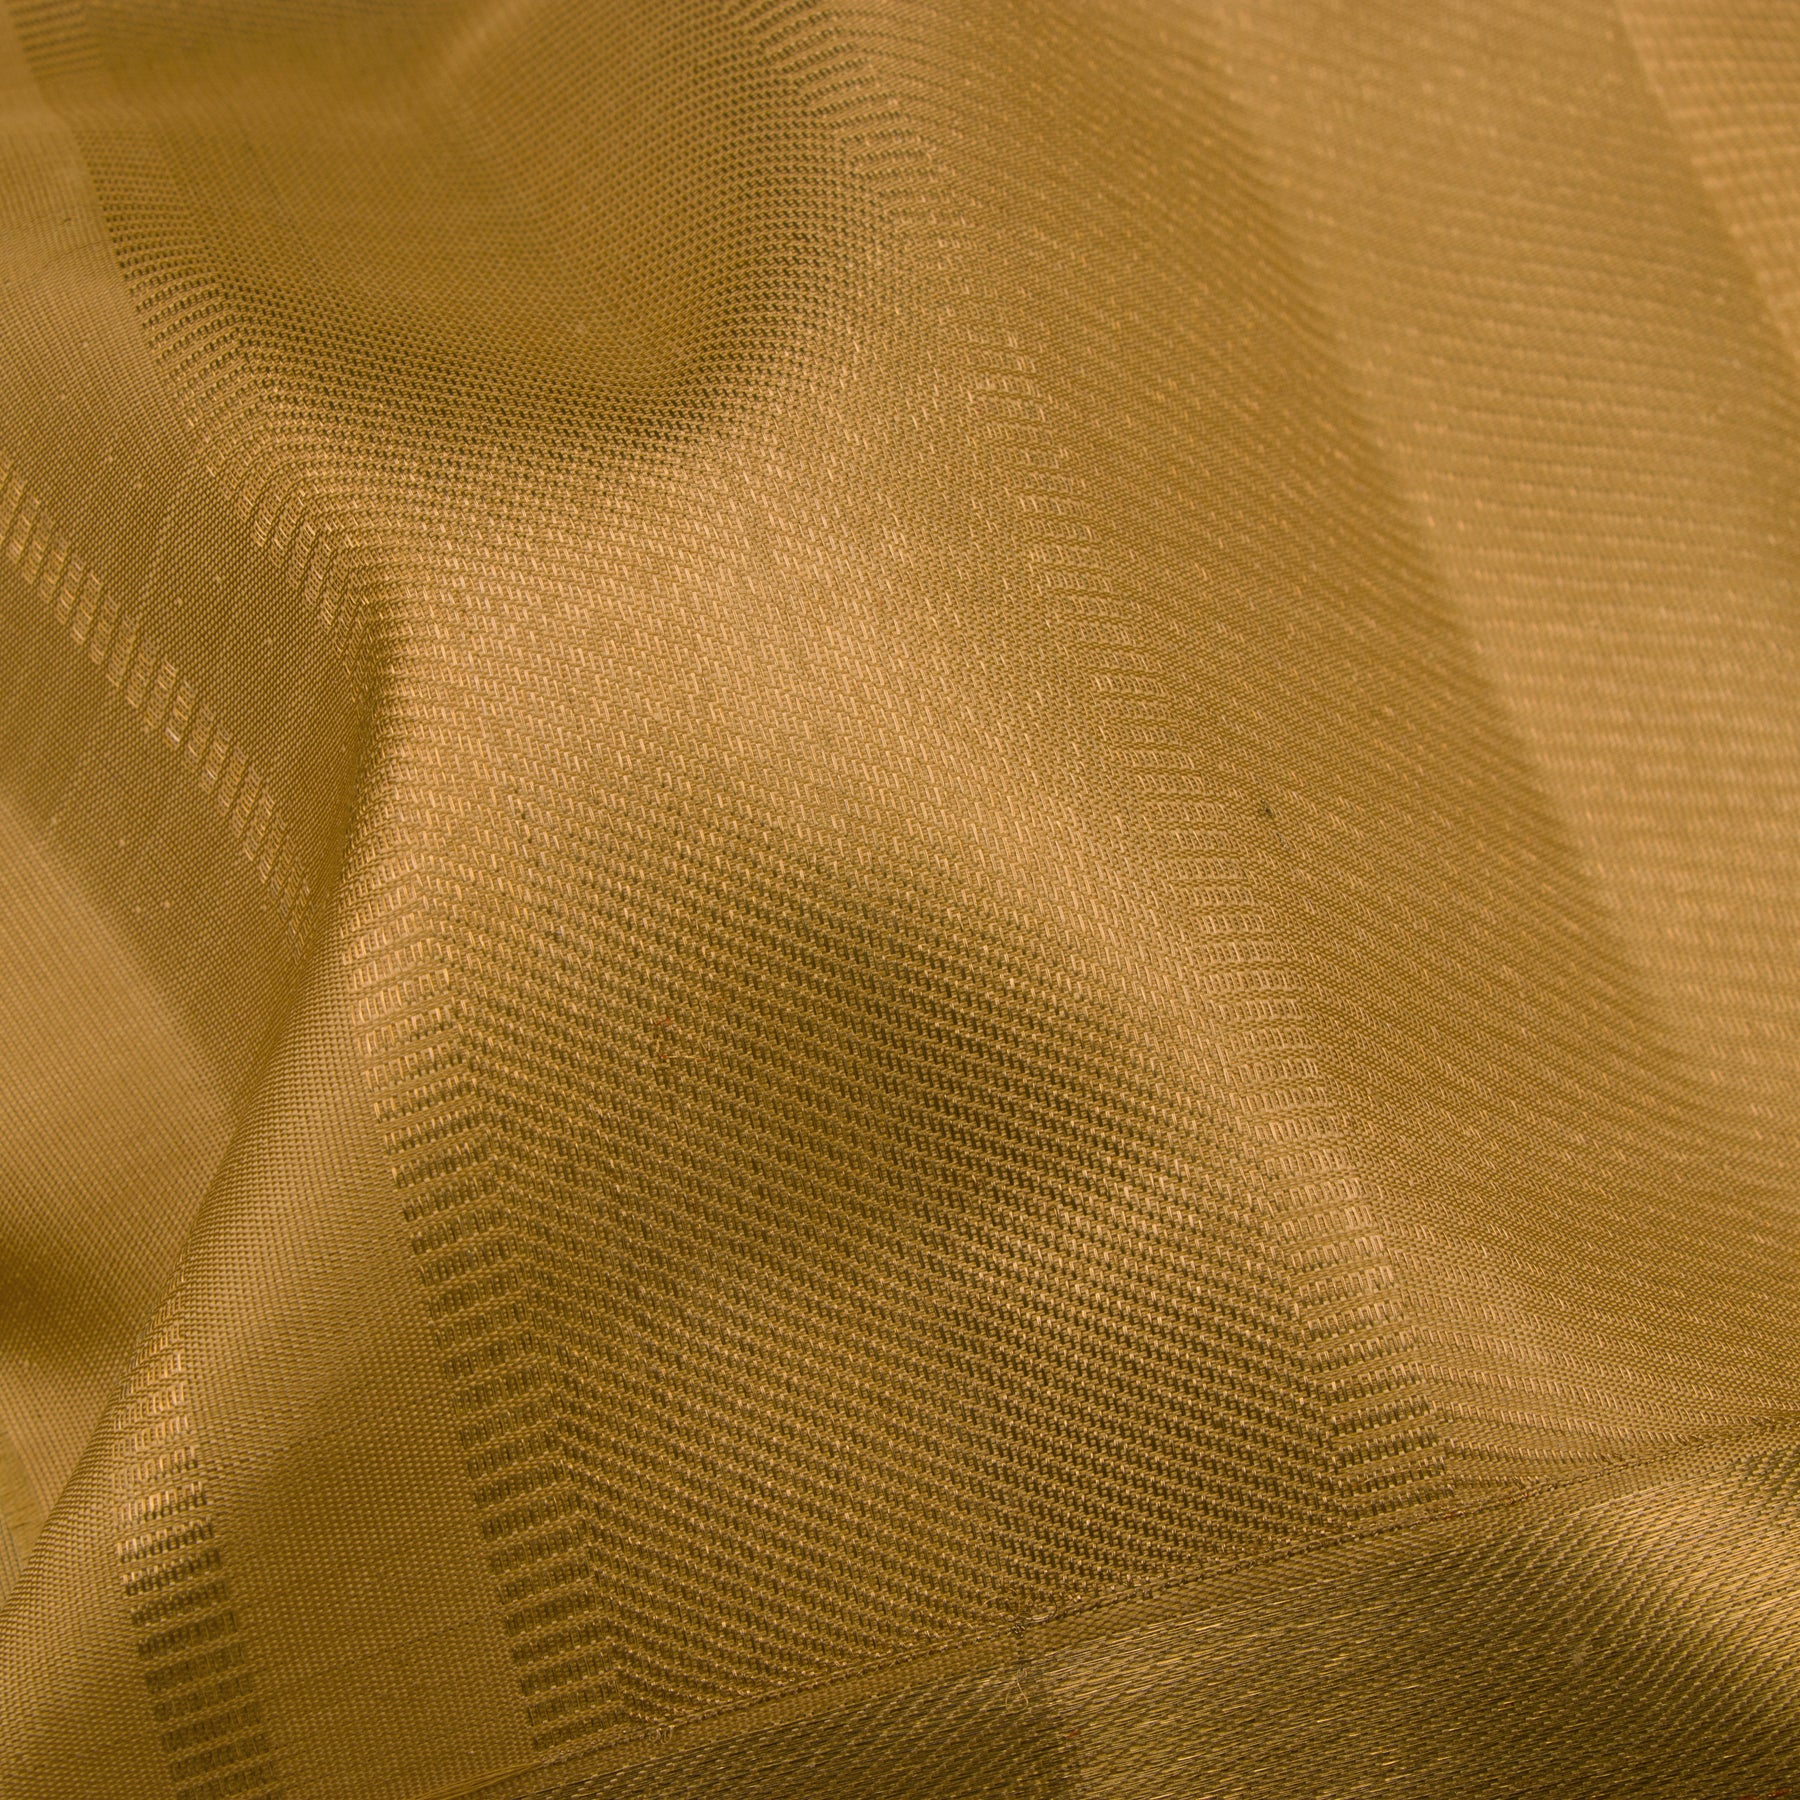 Kanakavalli Kanjivaram Silk Angavastram Set 23-060-HA001-01308 - Dwtail Fabric View